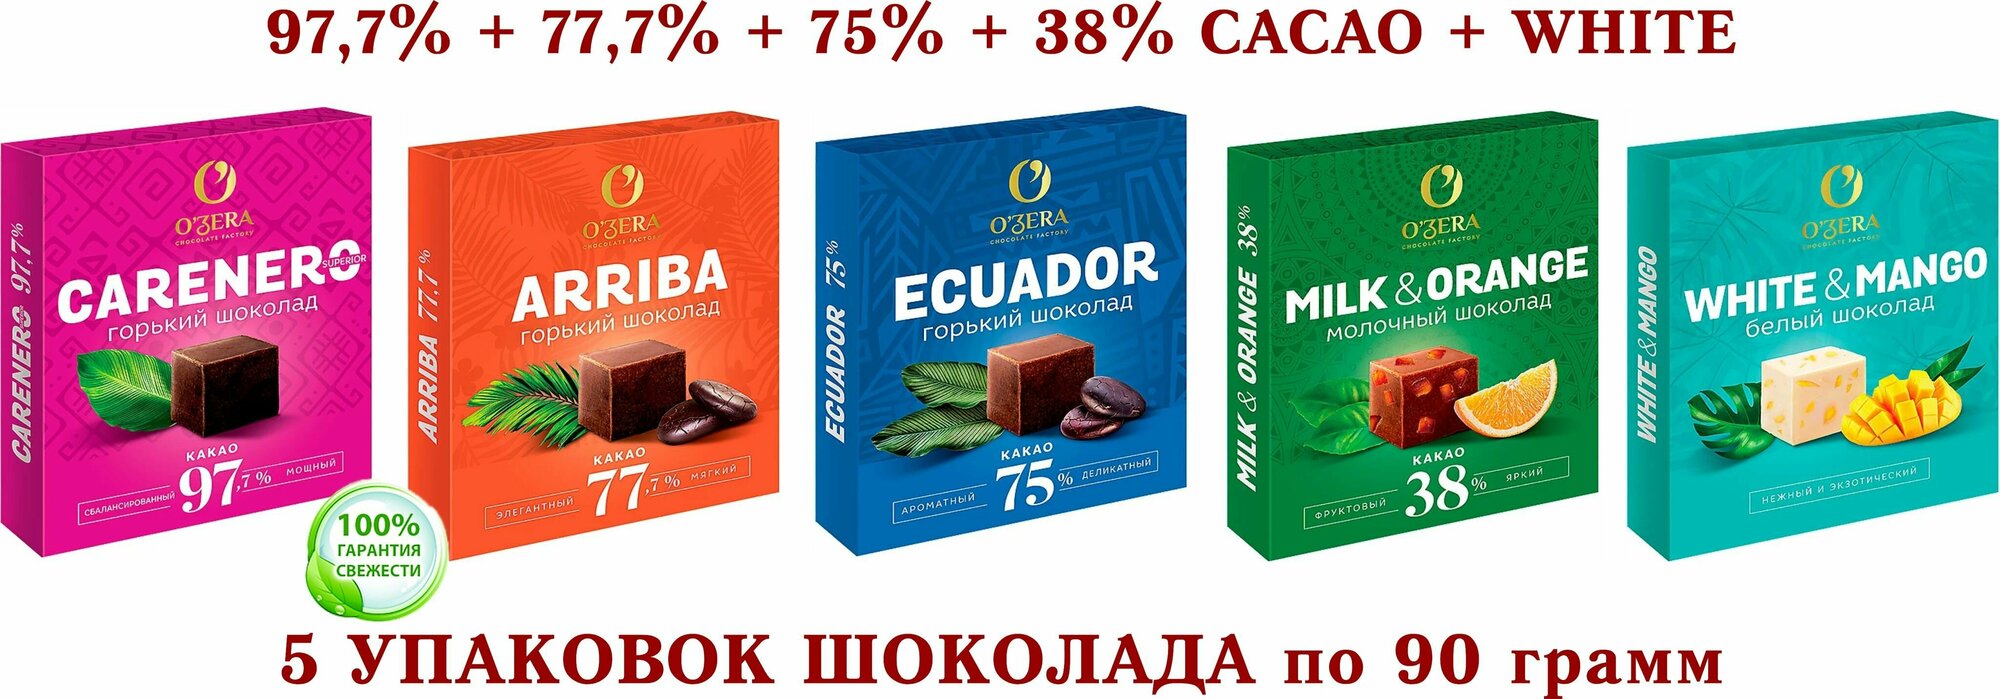 Шоколад OZera микс-Carenero SuperioR 97,7+ молочный с апельсином Milk&Orange 38%+ECUADOR 75%+Arriba-77,7%+белый с МАНГО-KDV-5*90 гр